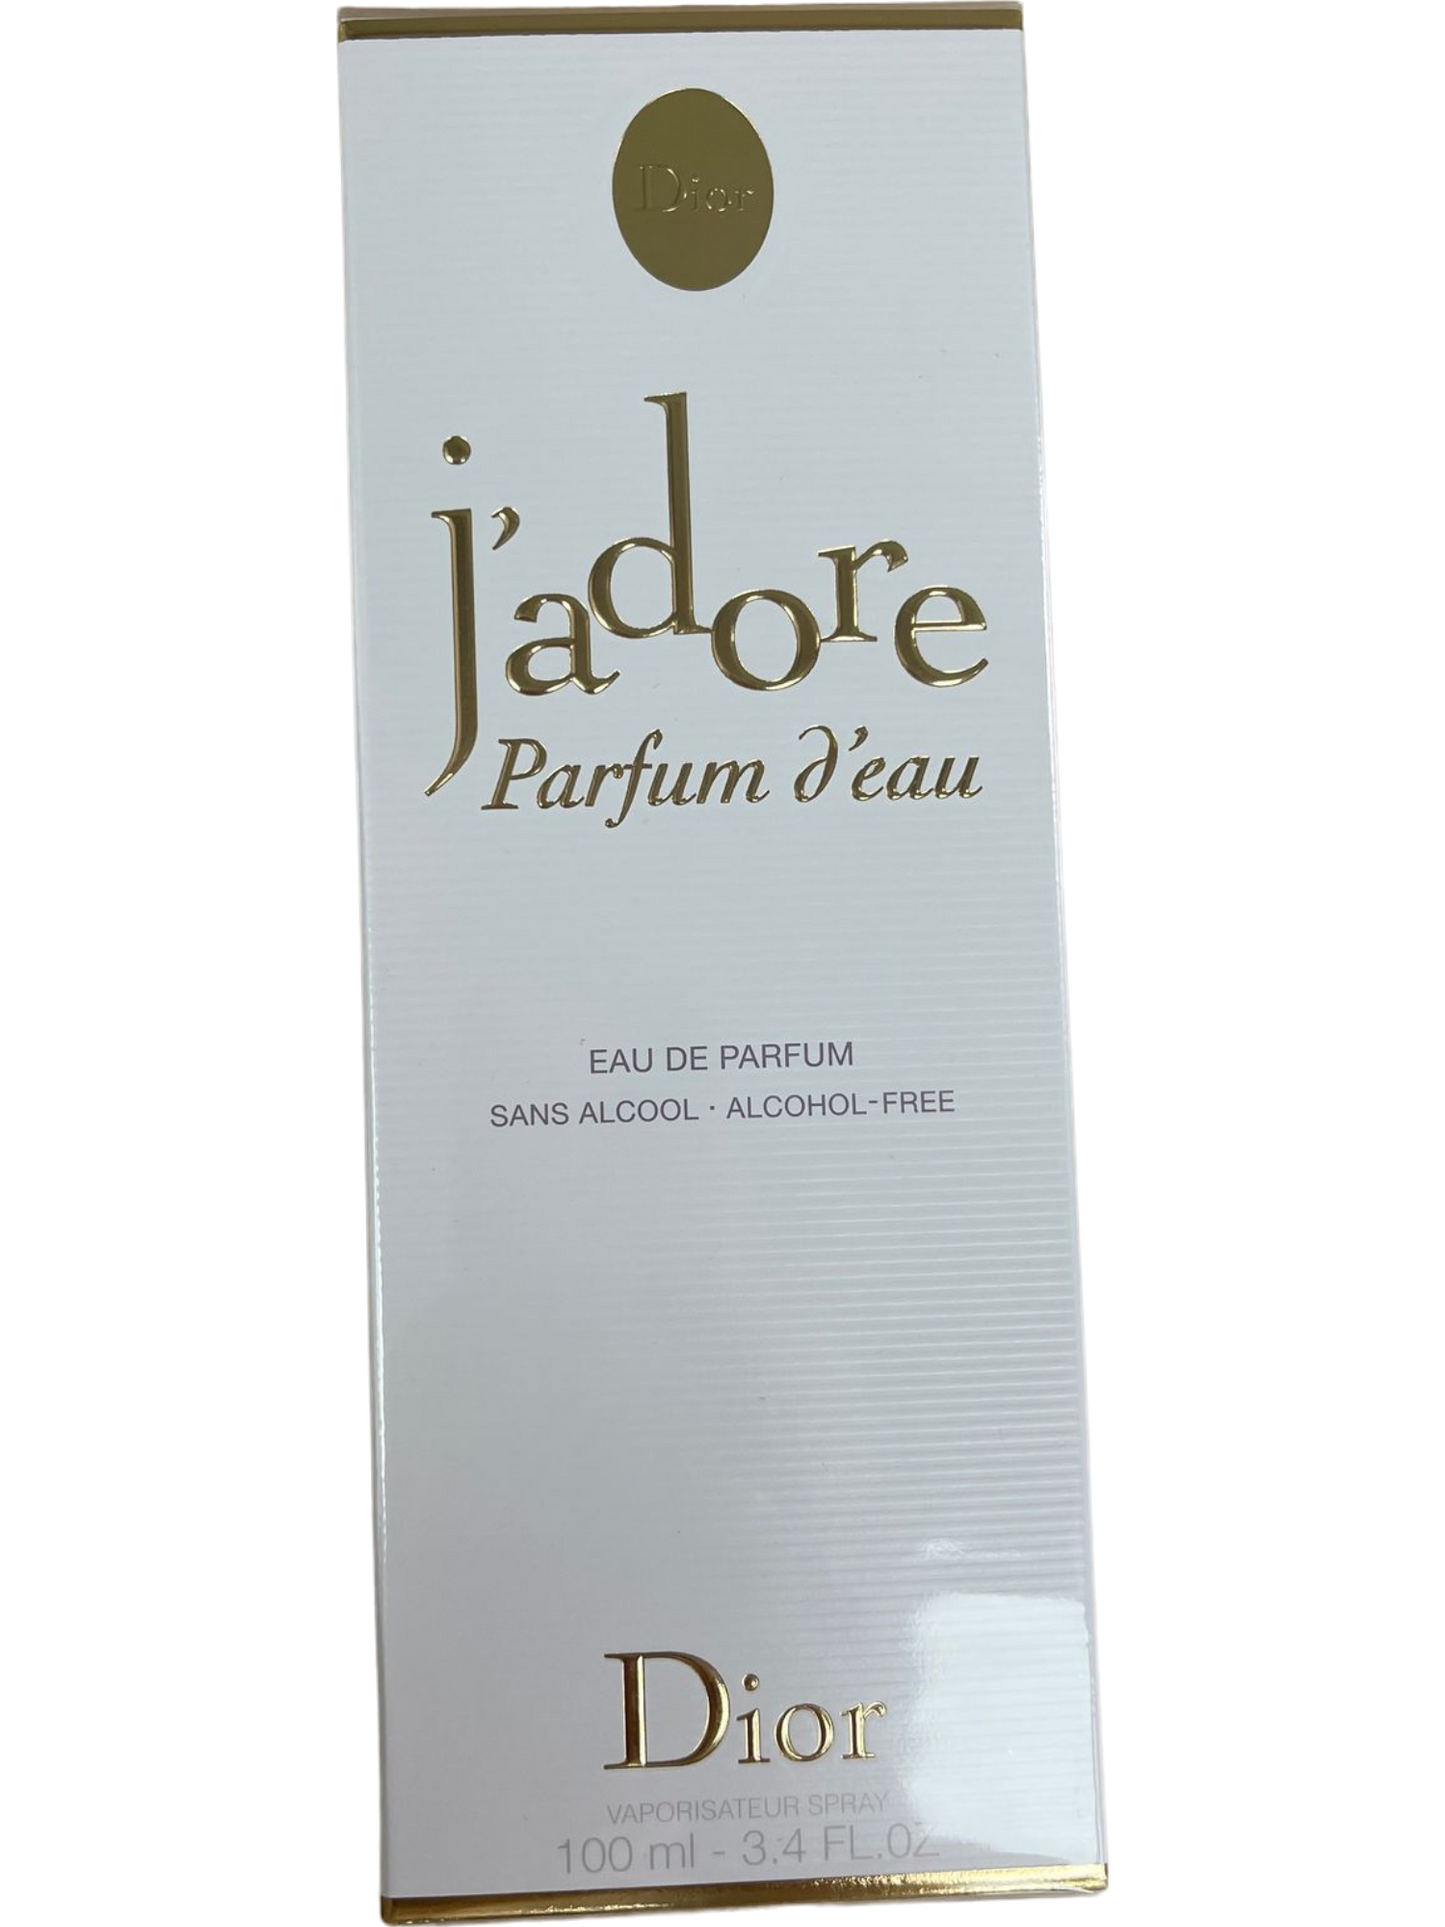 Christian Dior J’adore Parfum D’eau Edp Spray Alcohol Free 100 ml